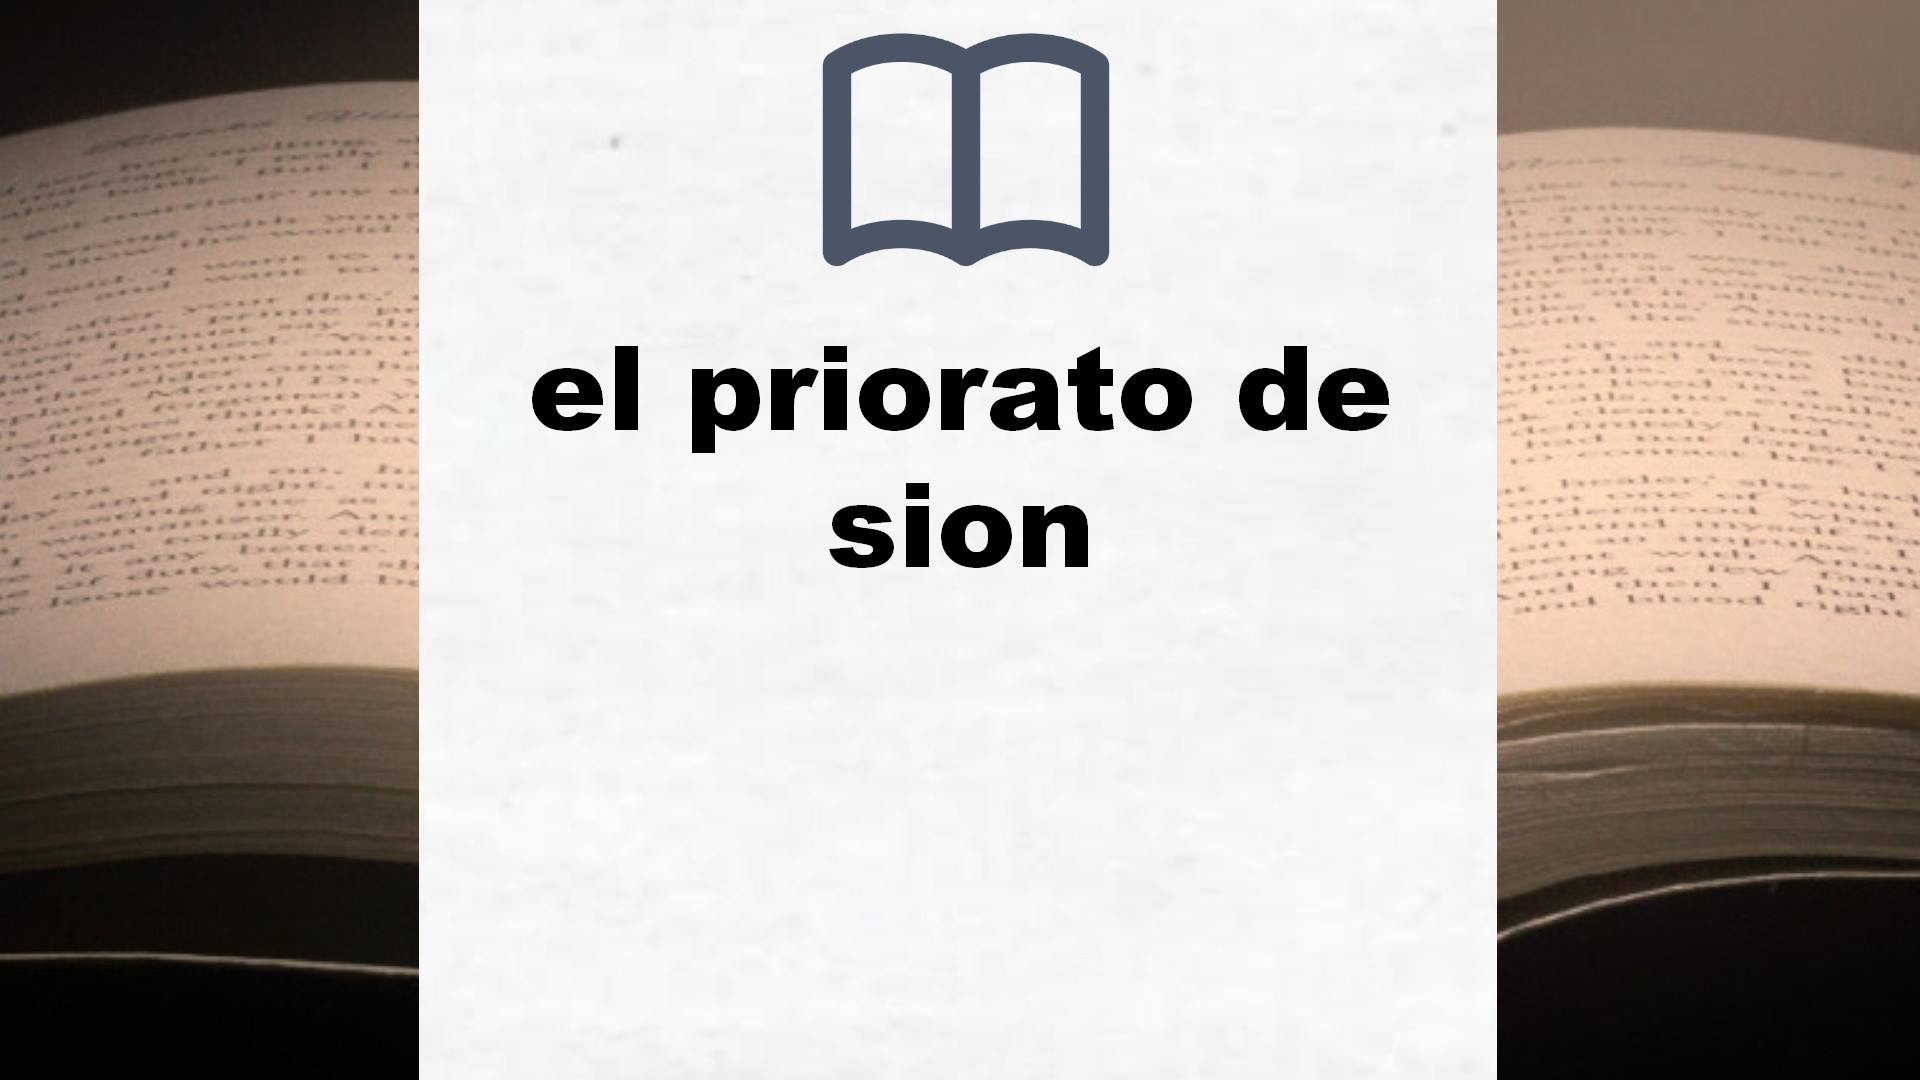 Libros sobre el priorato de sion